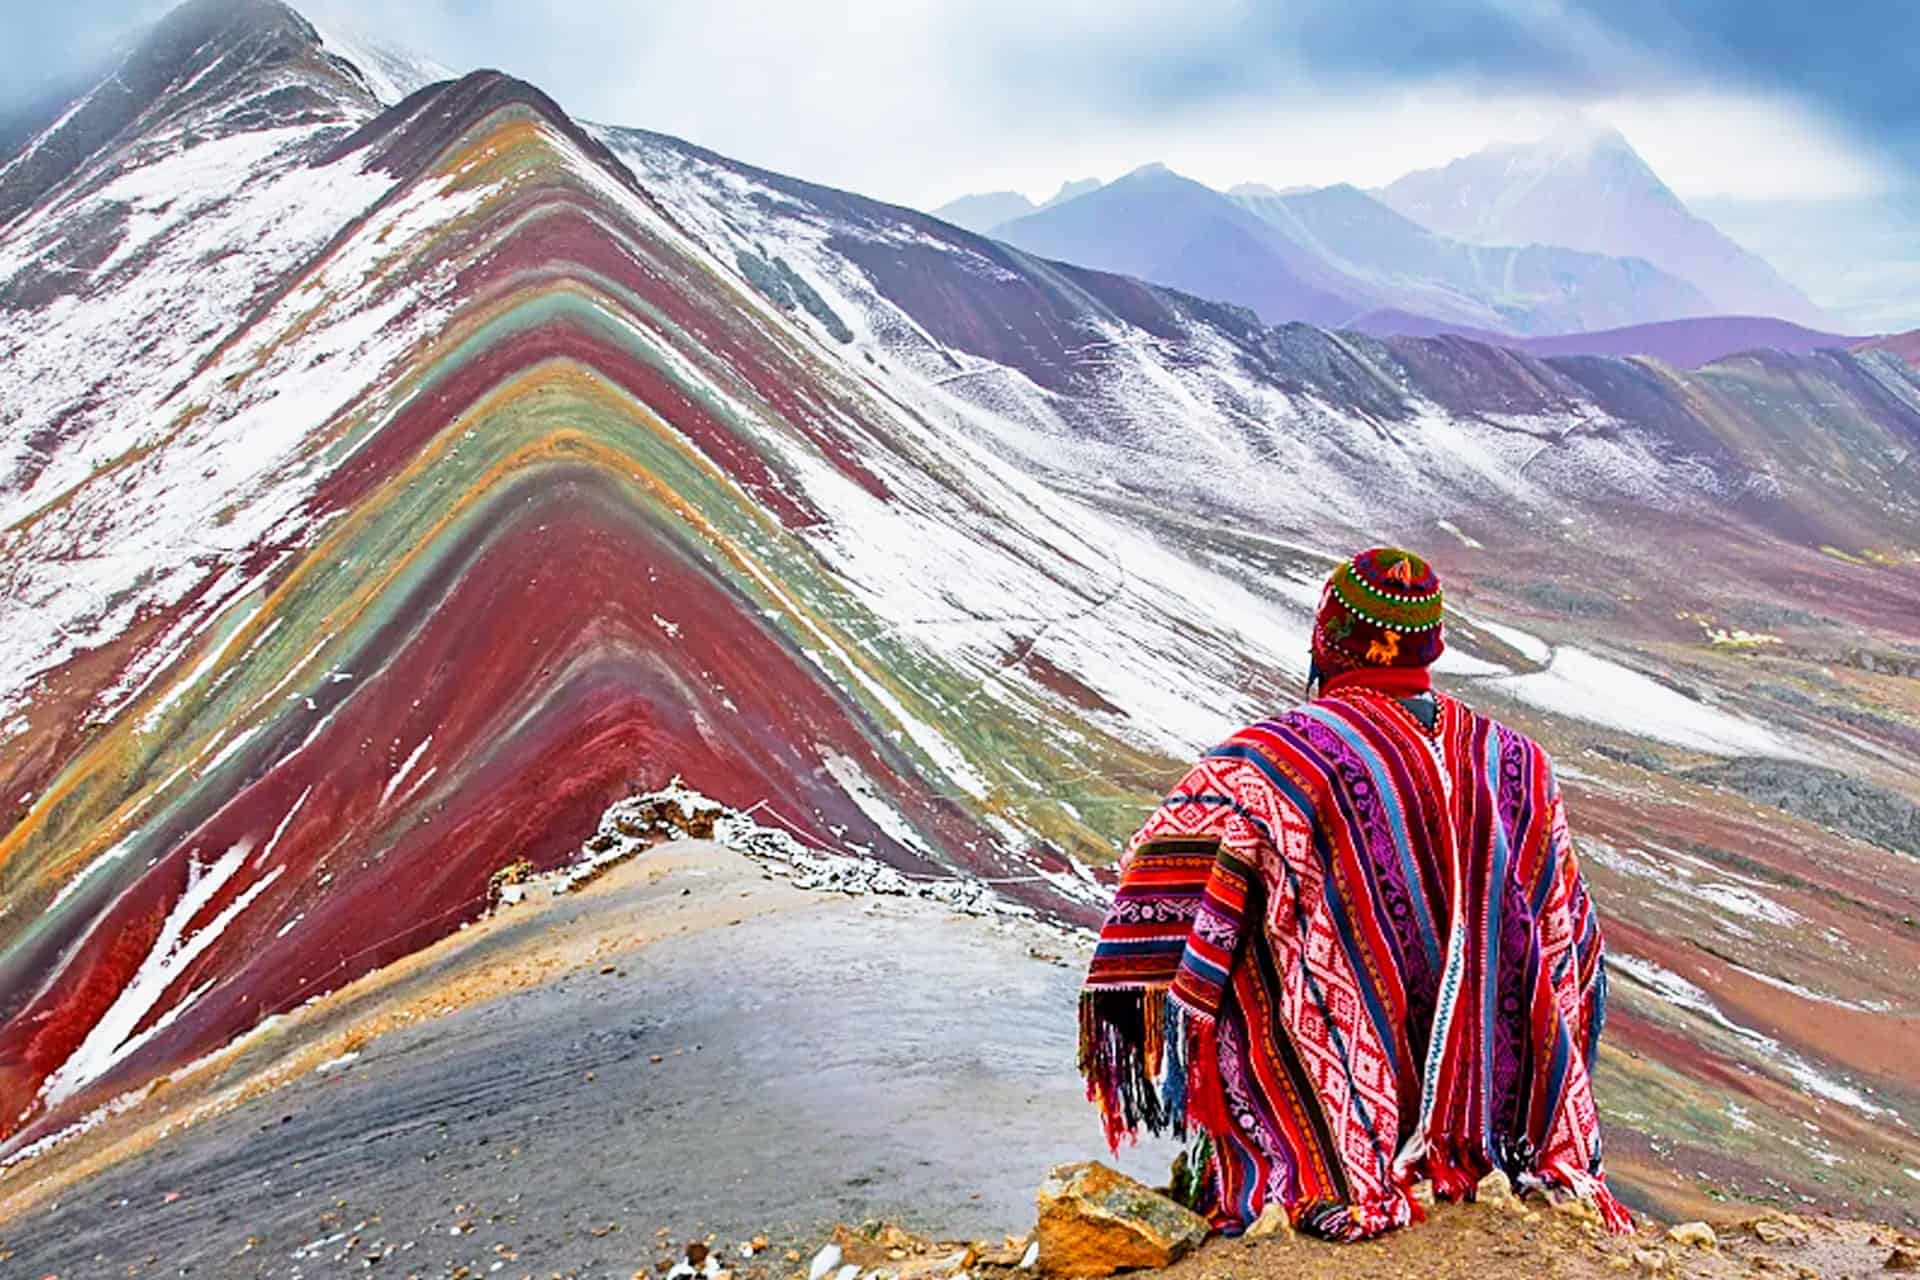 Montaña de Colores.